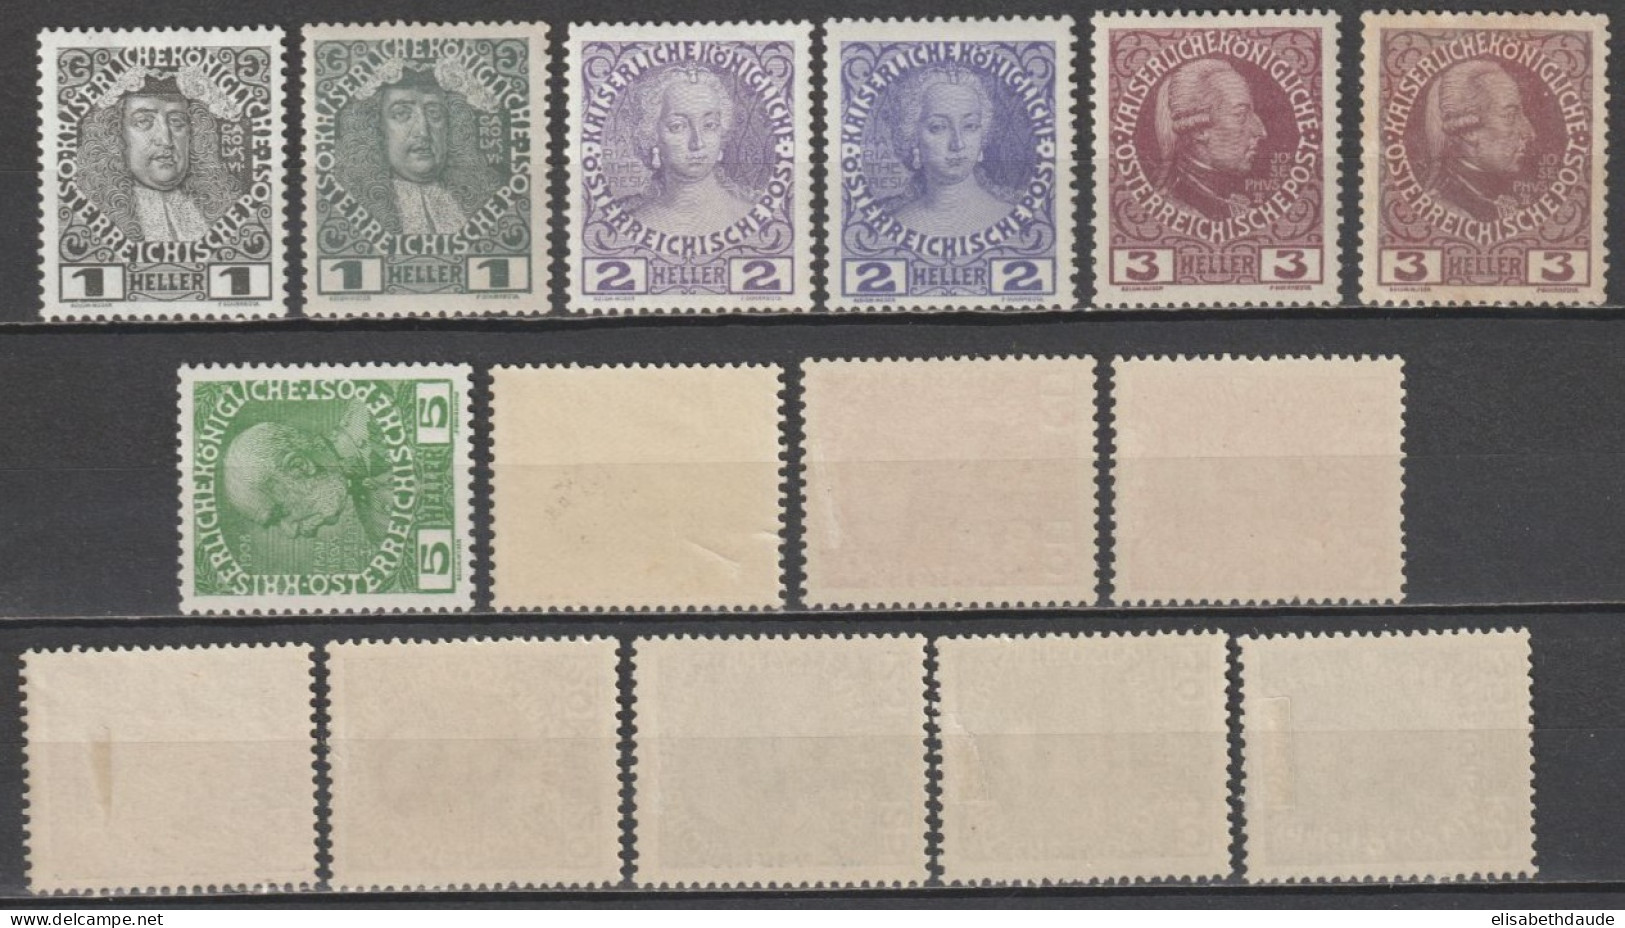 AUTRICHE - 1908 - SERIE YVERT N°101/111 PAPIER GLACE OU/ET PAPIER NORMAL * MLH - - Unused Stamps